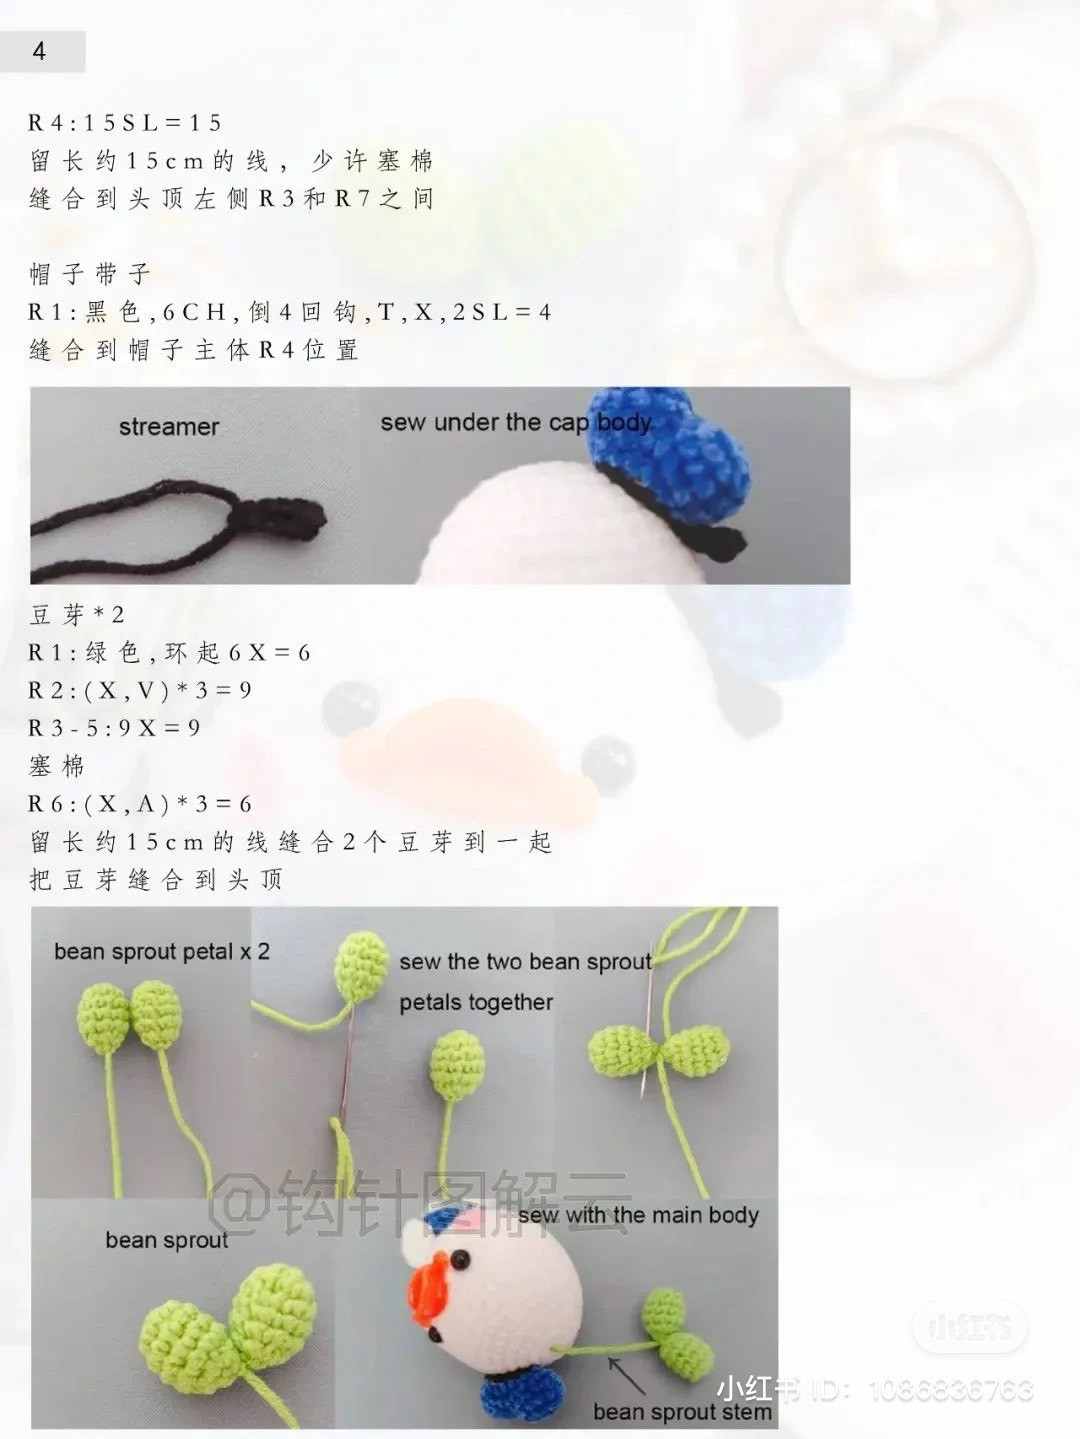 Duck bean sprouts crochet pattern